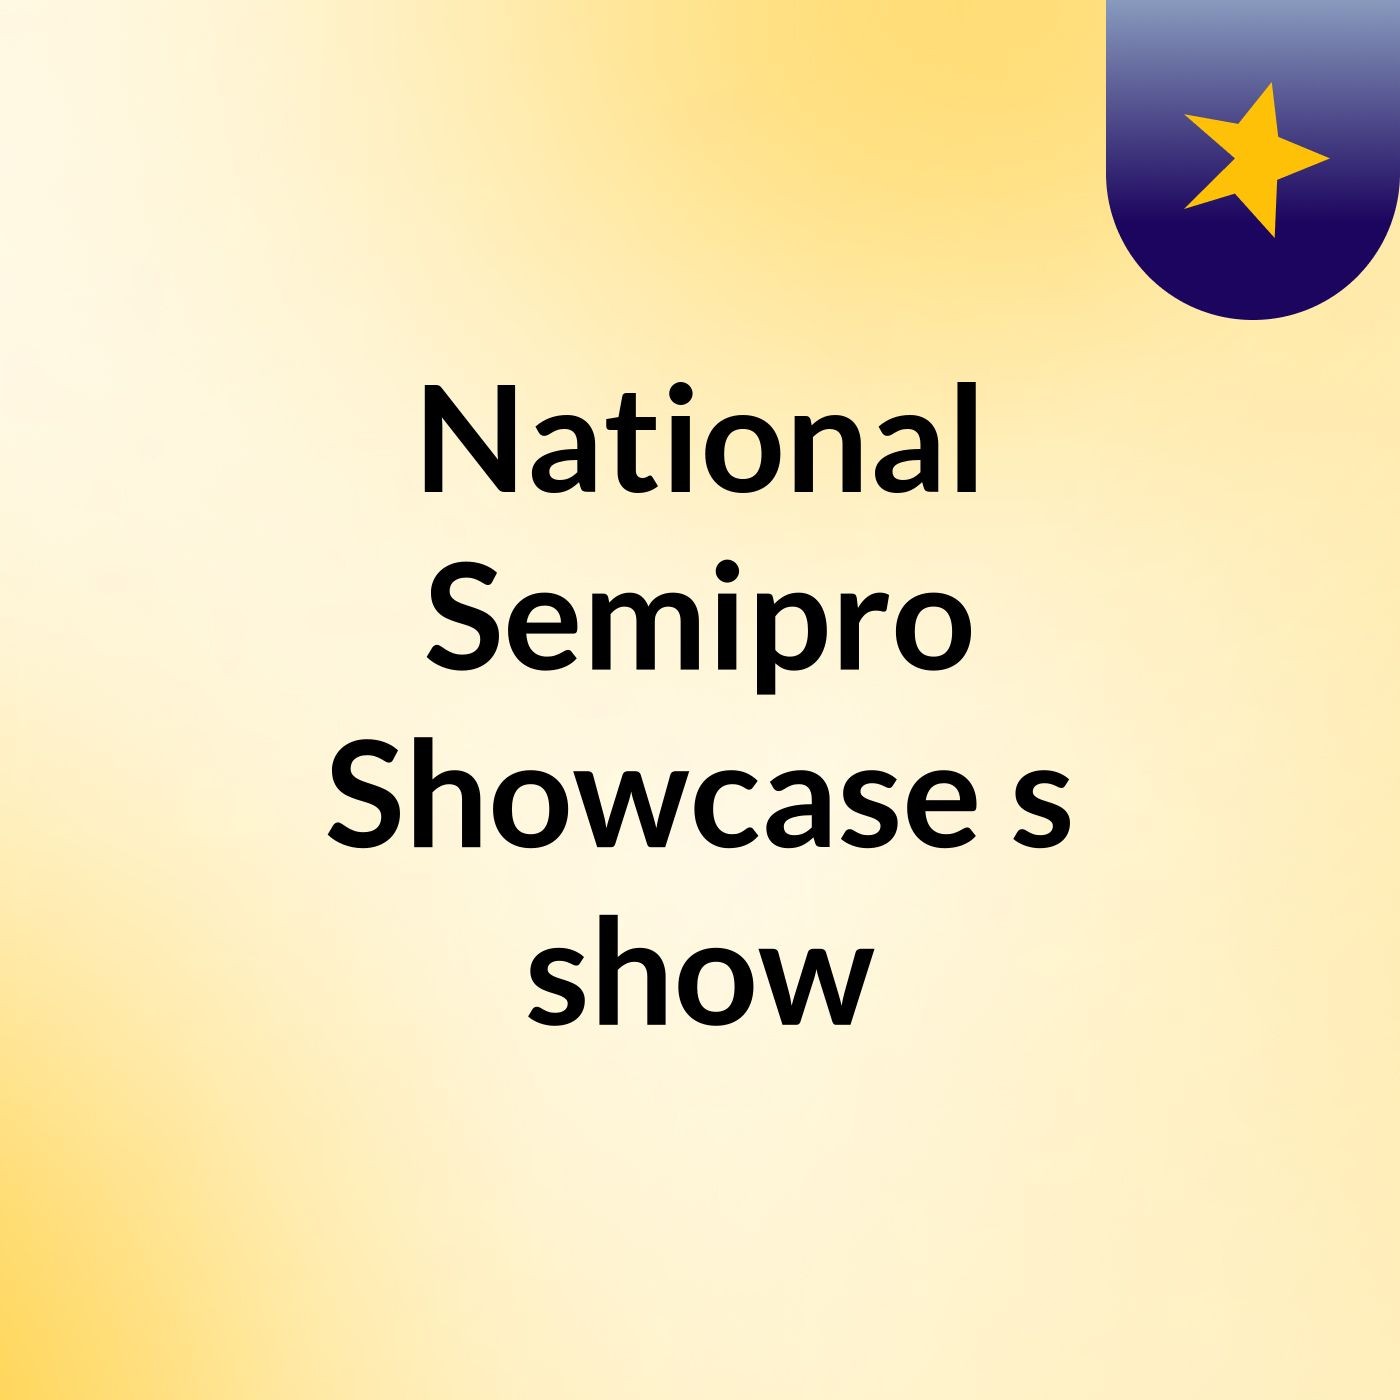 National Semipro Showcase (East Vs West AllStars)